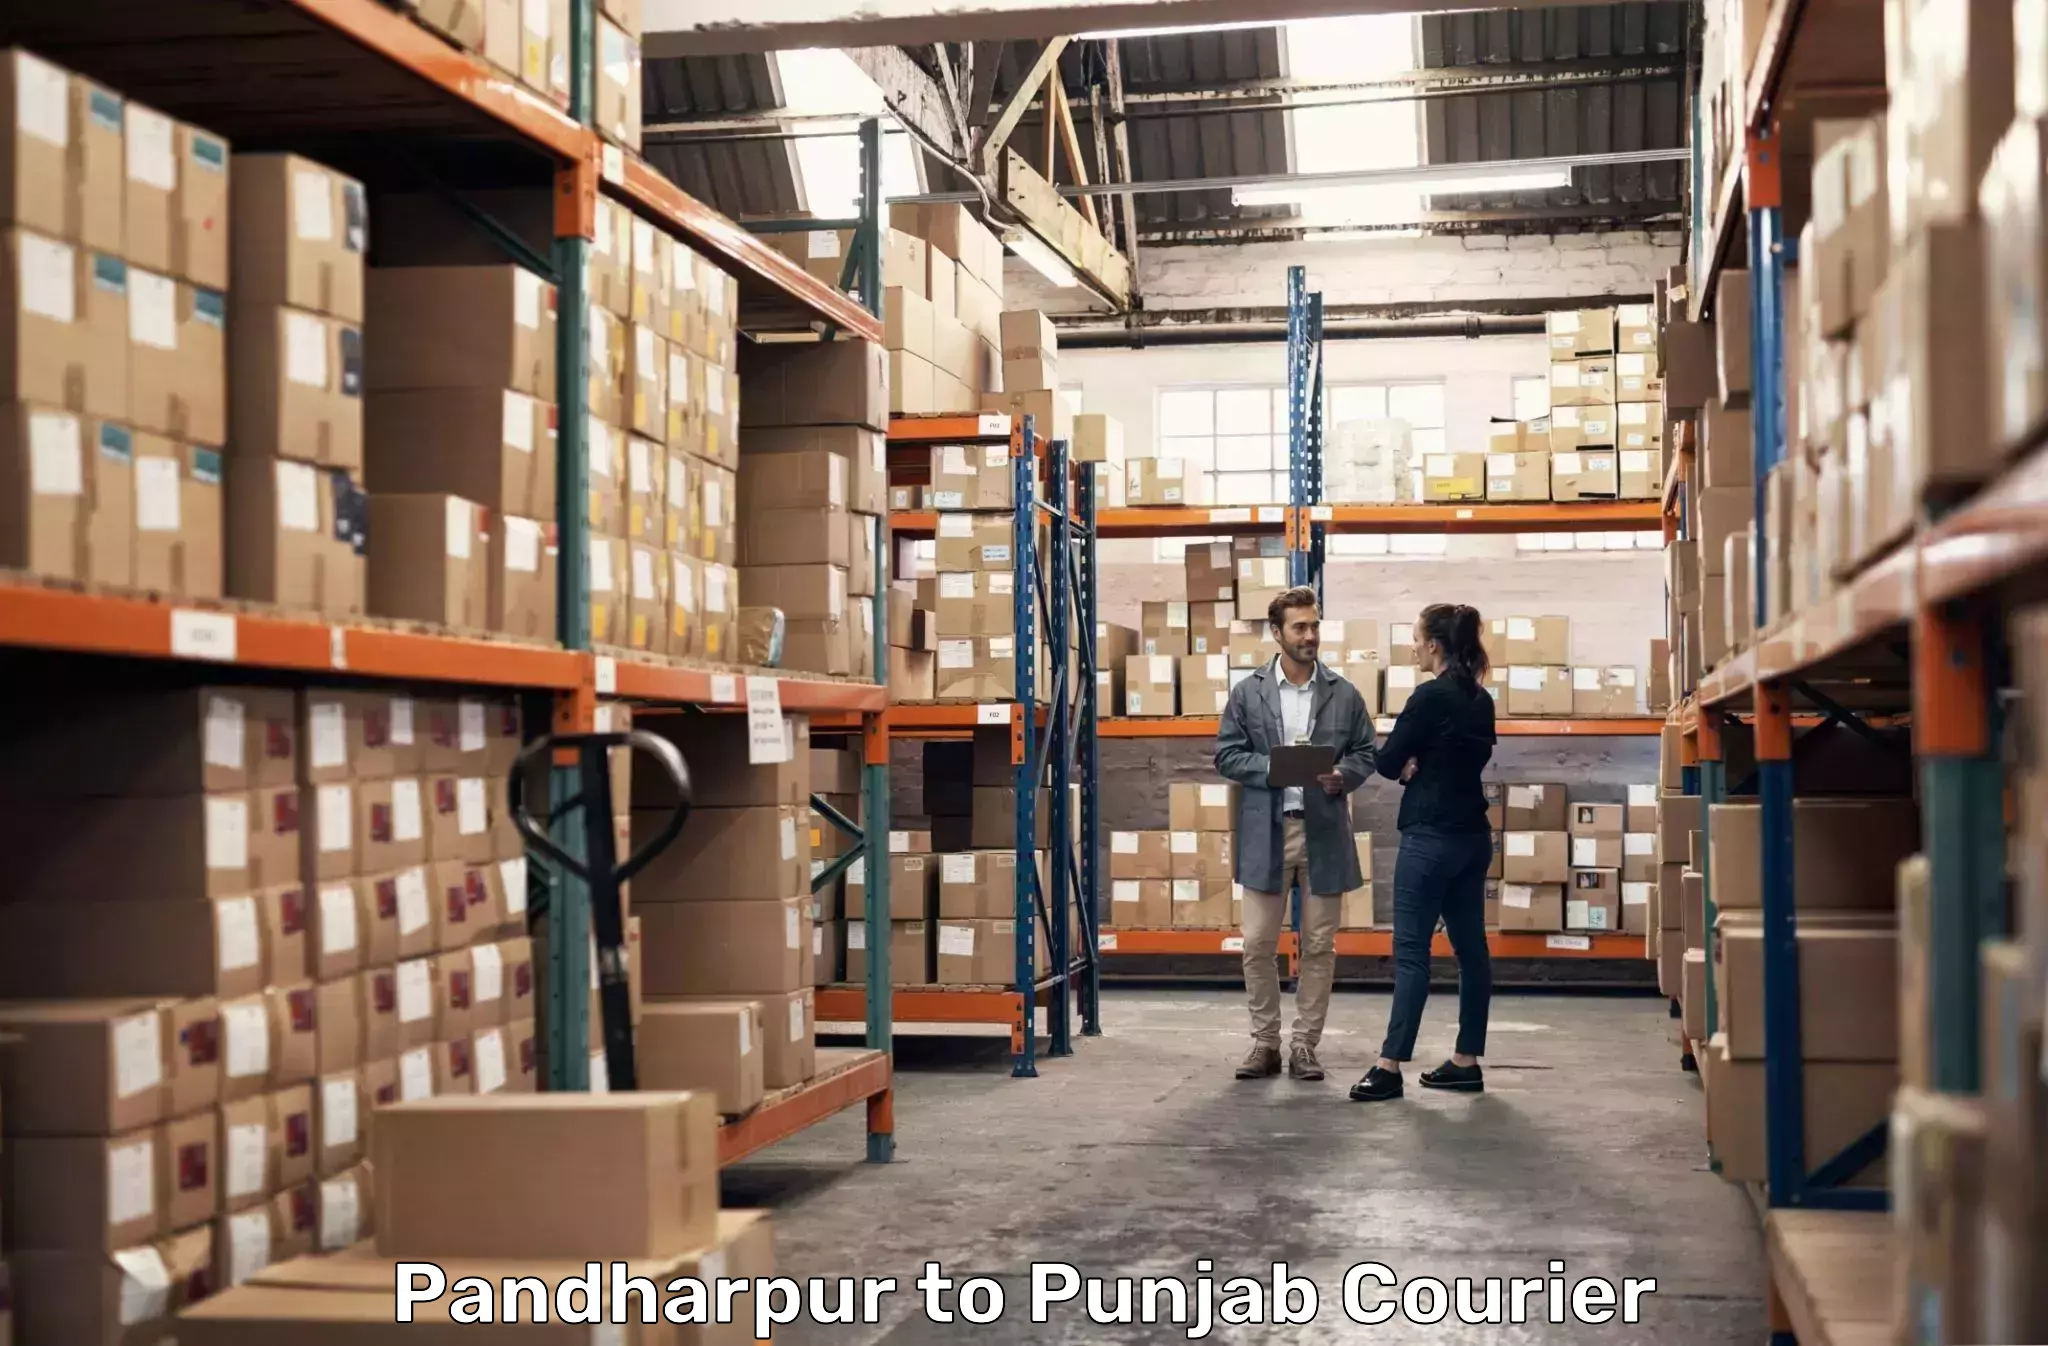 Fast delivery service Pandharpur to Jalandhar